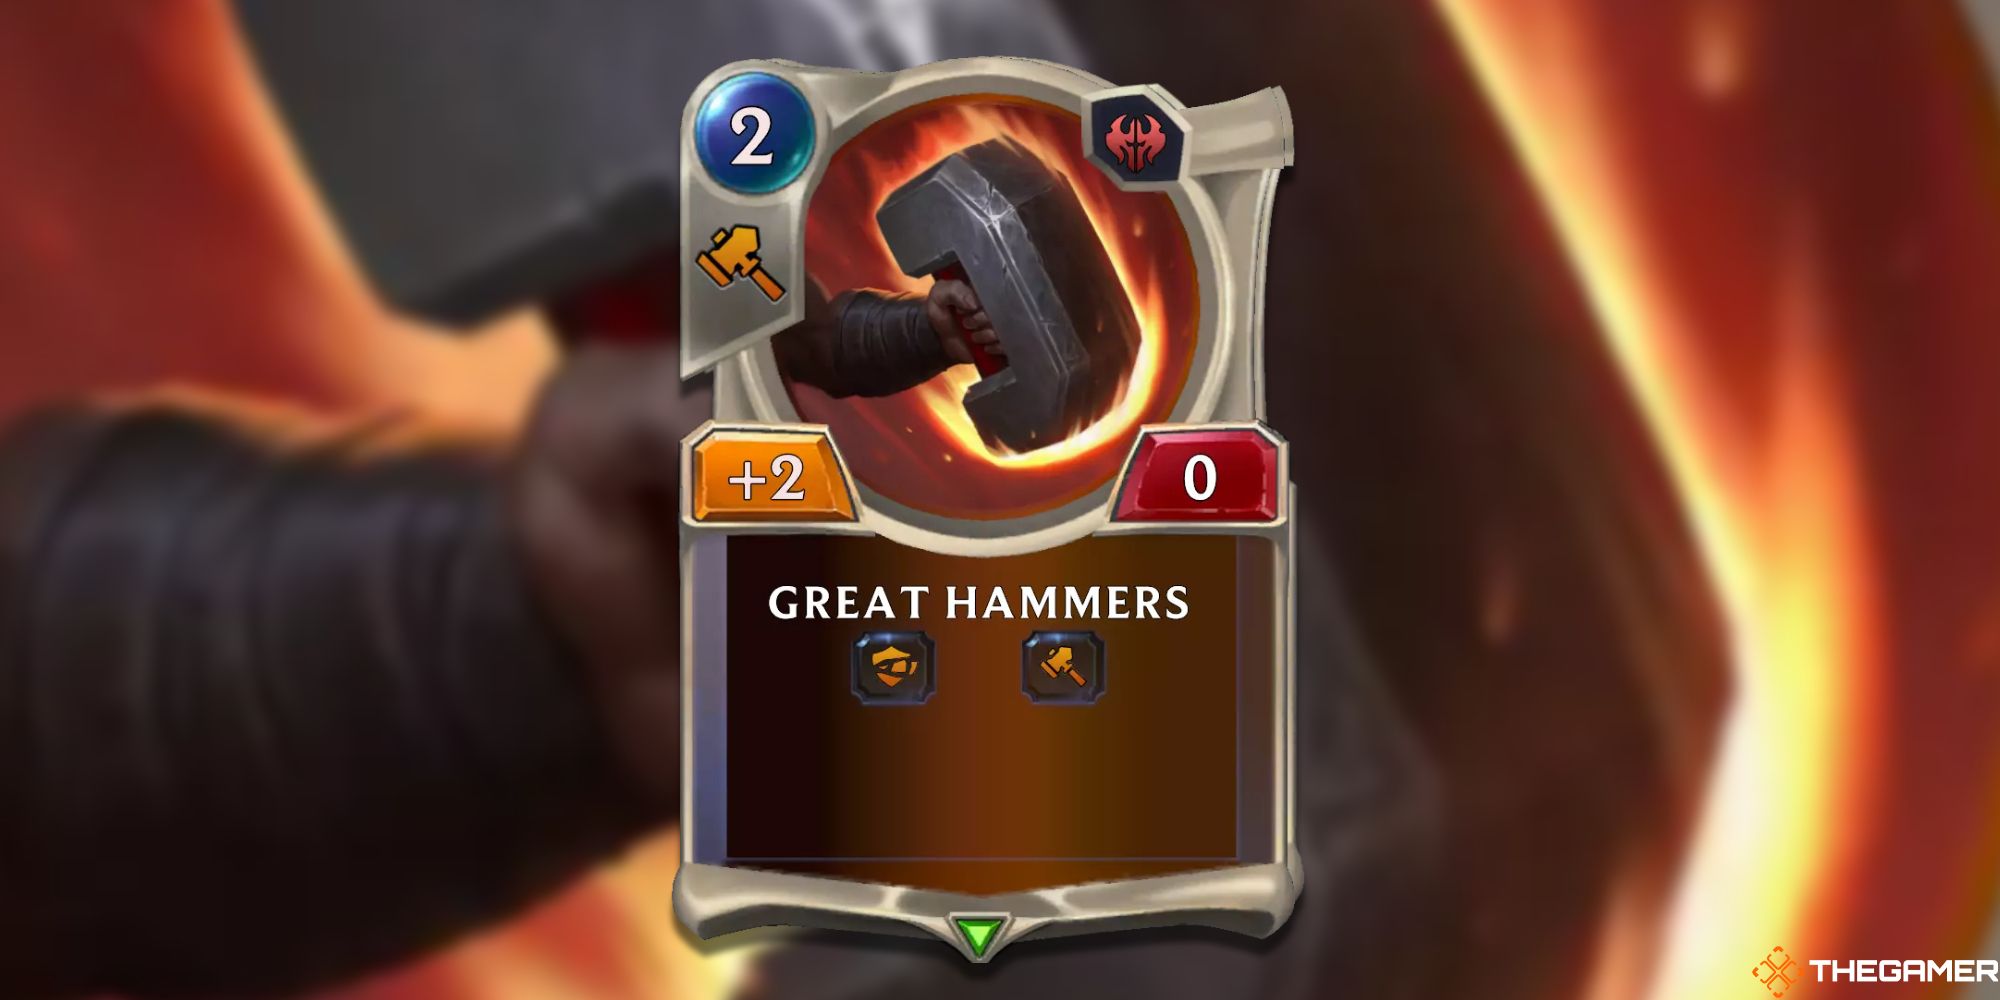 Great Hammers Card Legends Of Runeterra